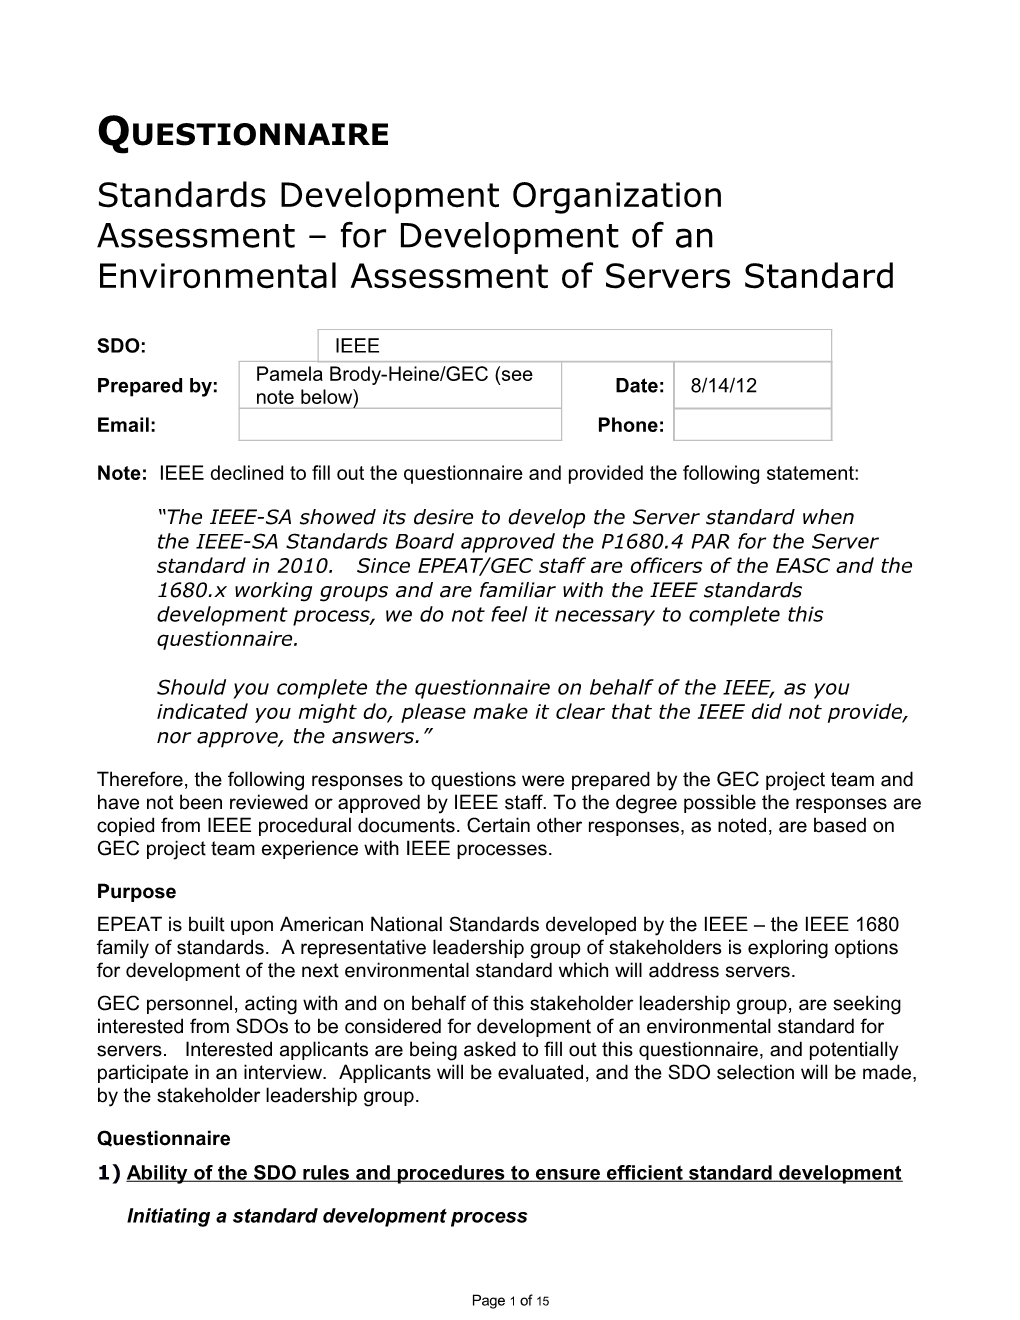 Standards Development Organization Assessment for Development of an Environmental Assessment